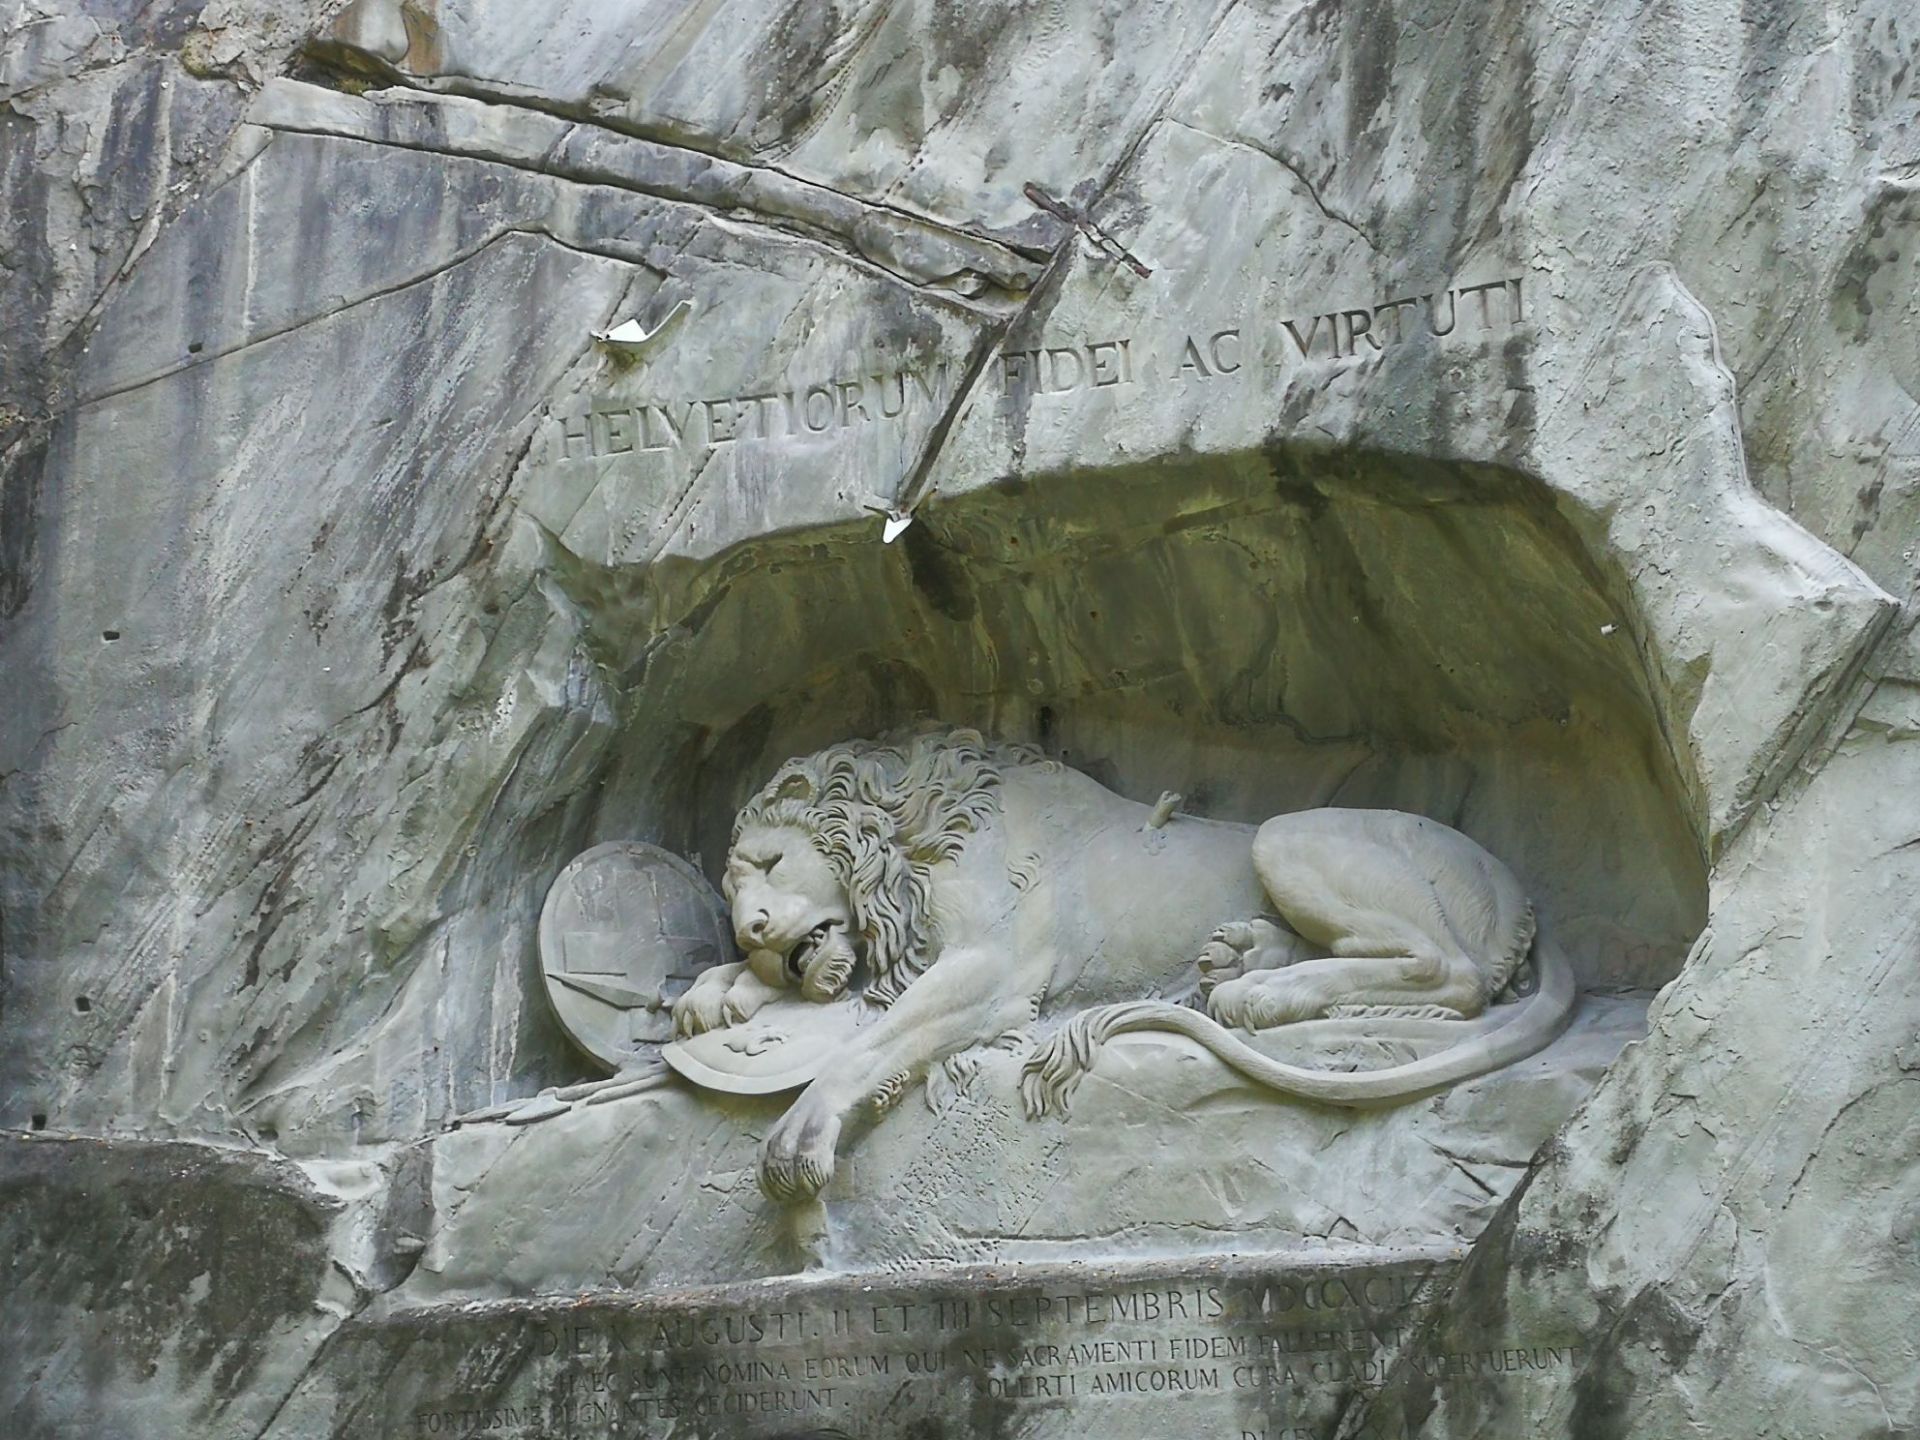 世界上最悲壮和最感人的雕塑——濒死的狮子。一走近这狮子，浓重的悲伤扑面而来，那一瞬仿佛千百年积淀的哀